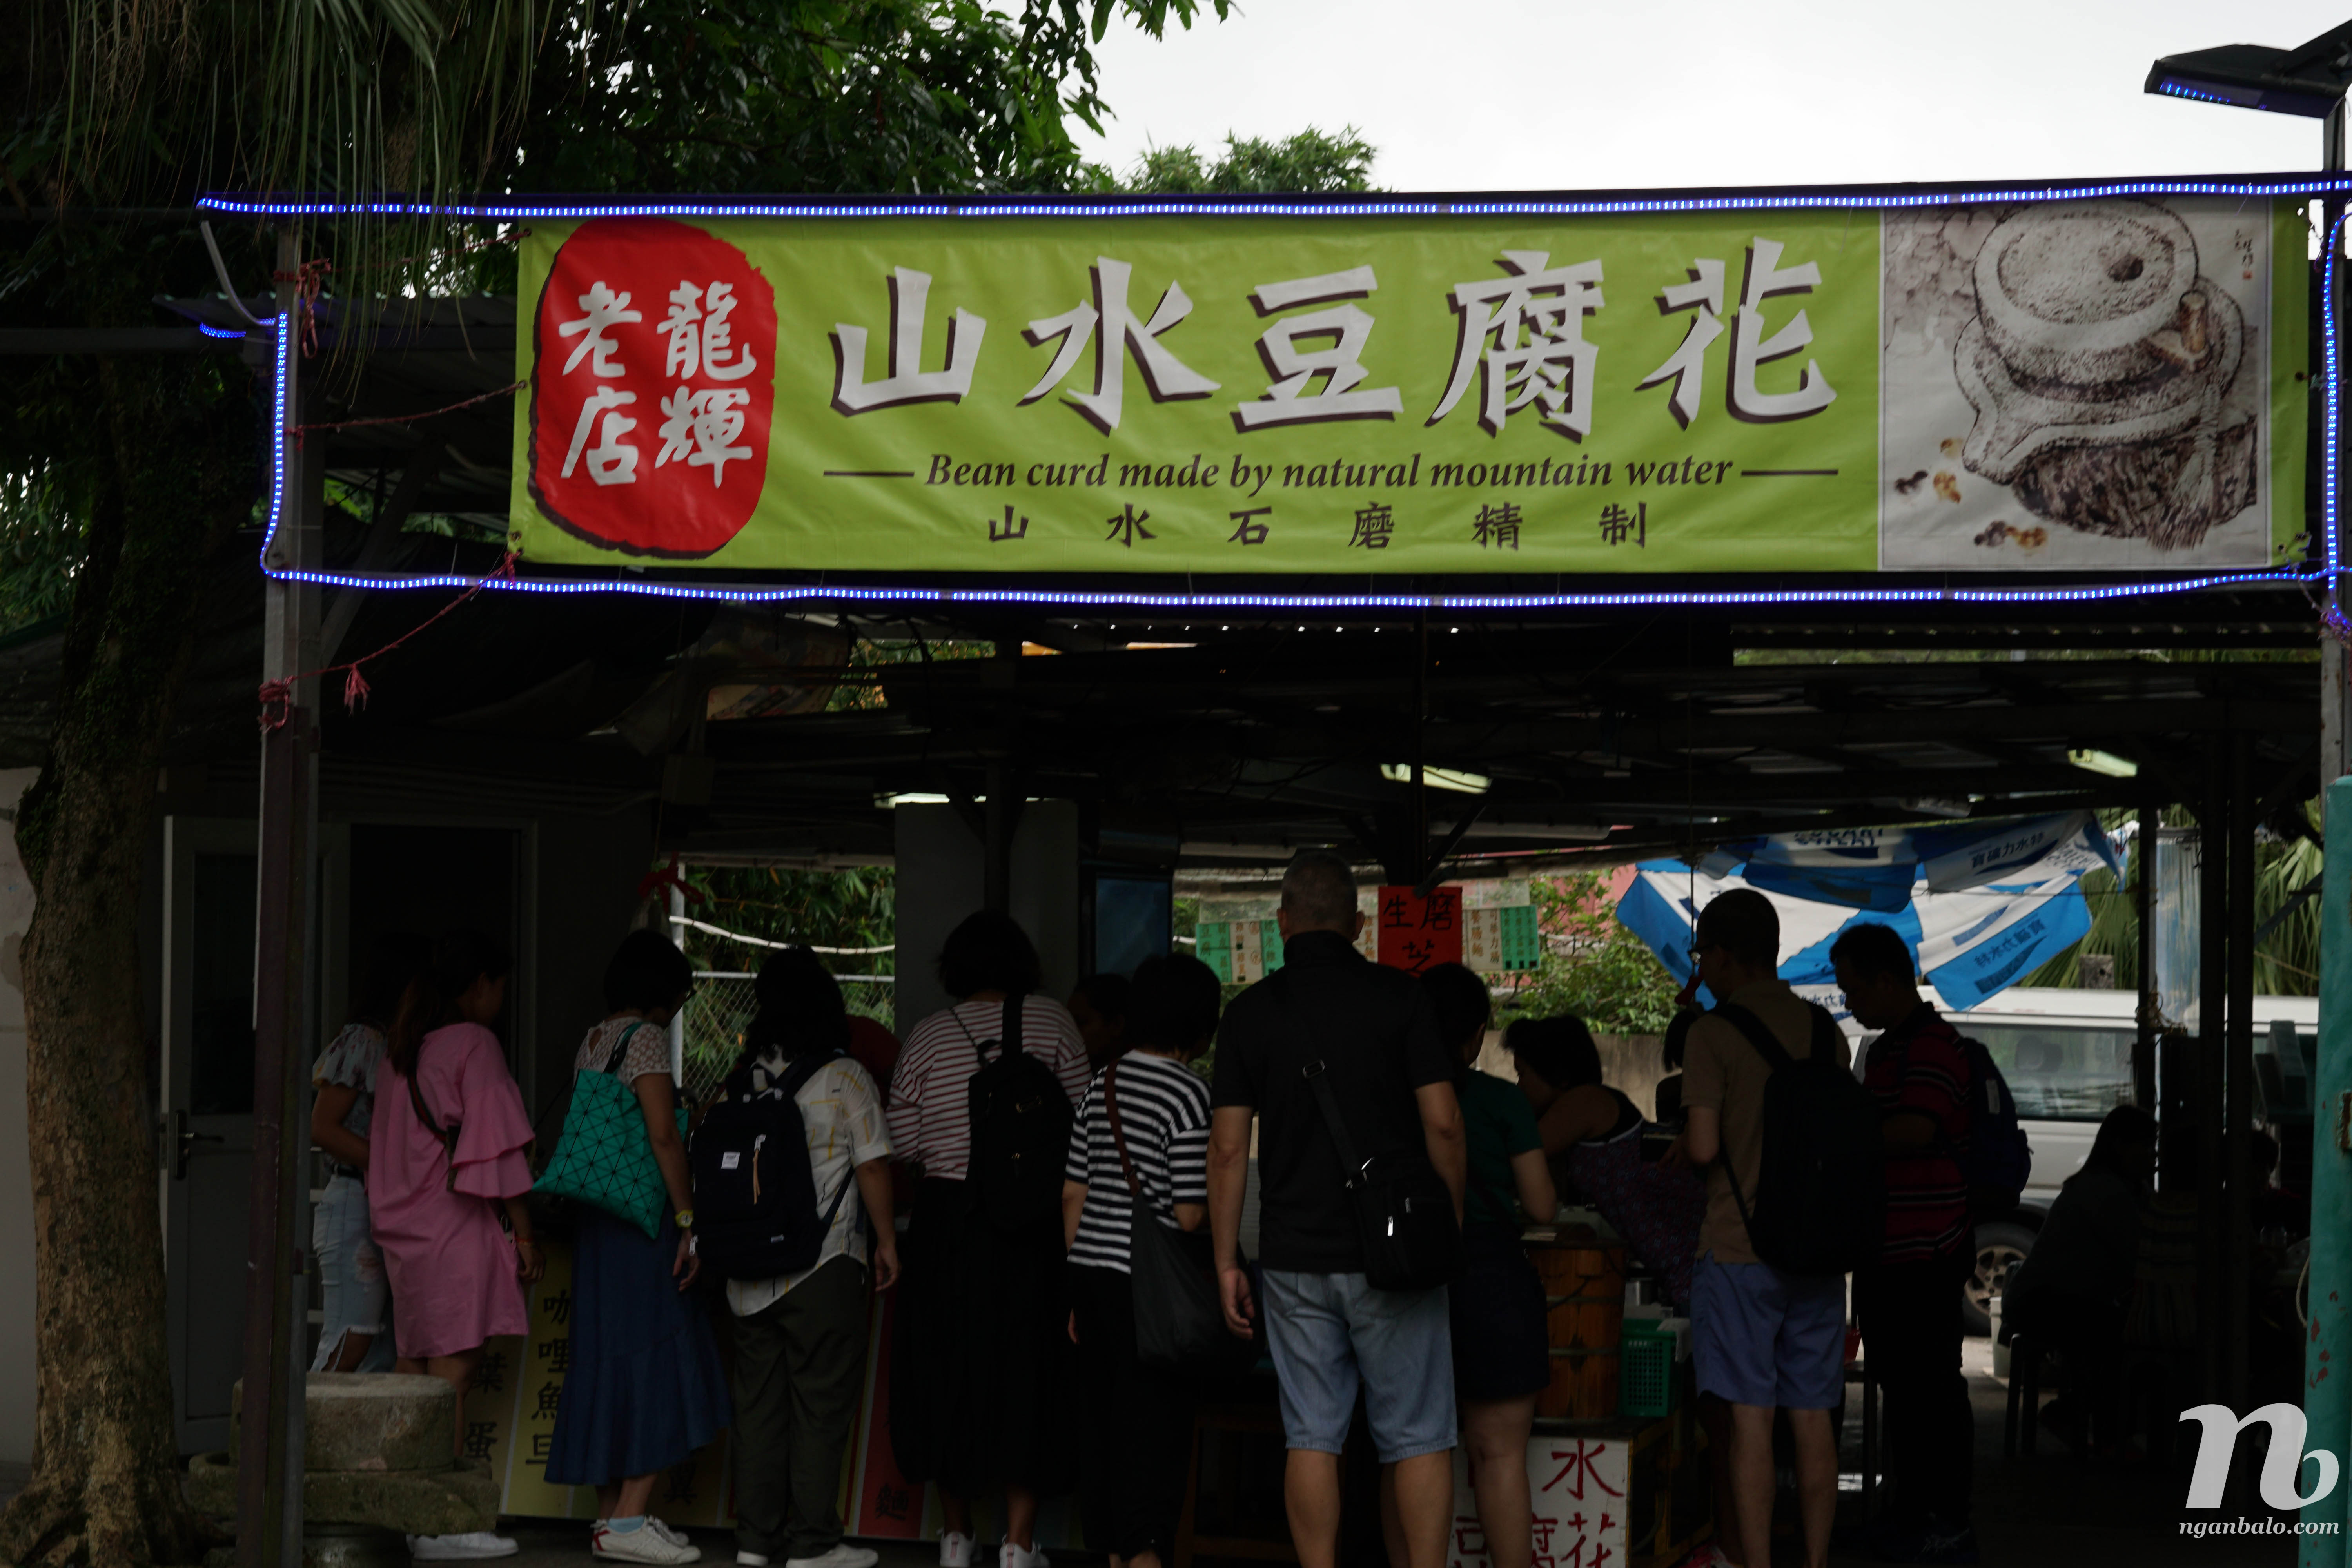 4 ngày ở Hong Kong (4) - Đến đảo Lantau thăm Tian Tan Buddha và làng chài Tai O